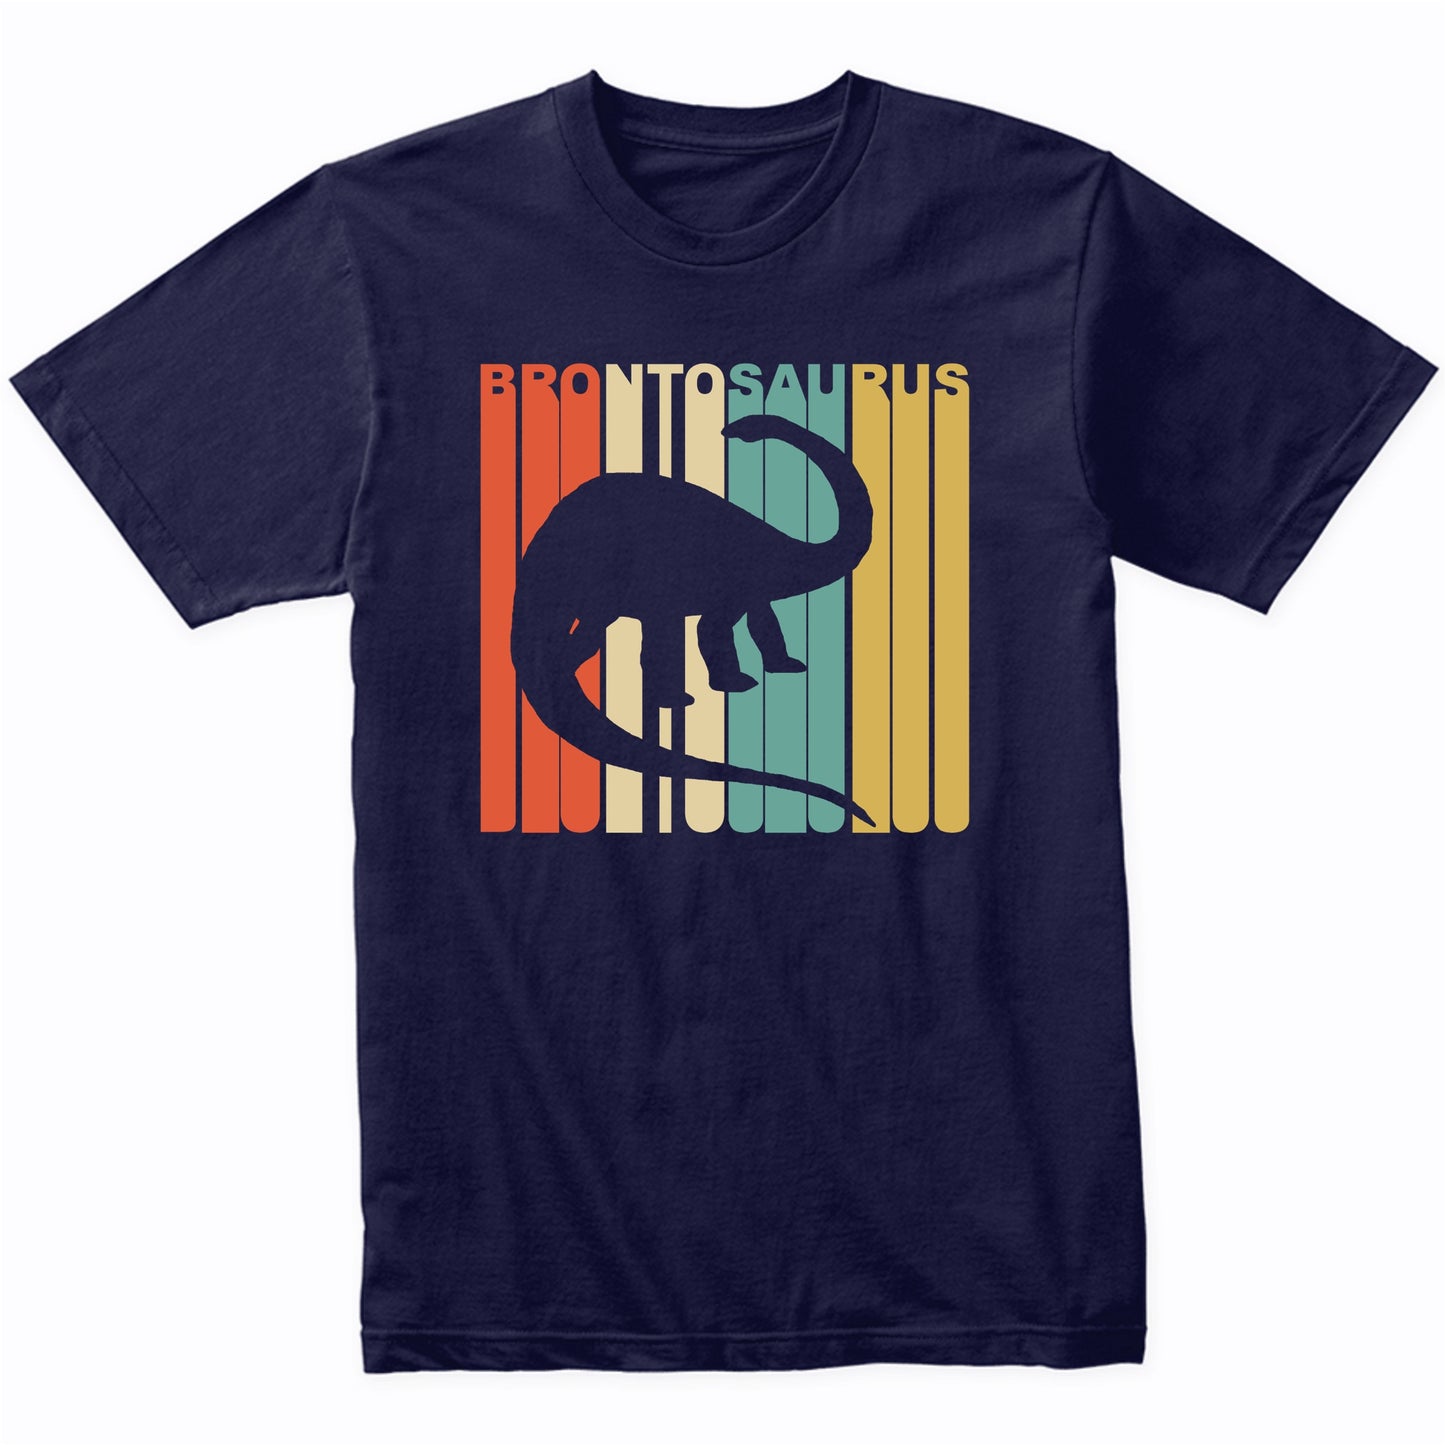 Retro 1970's Style Dinosaur Silhouette Brontosaurus T-Shirt